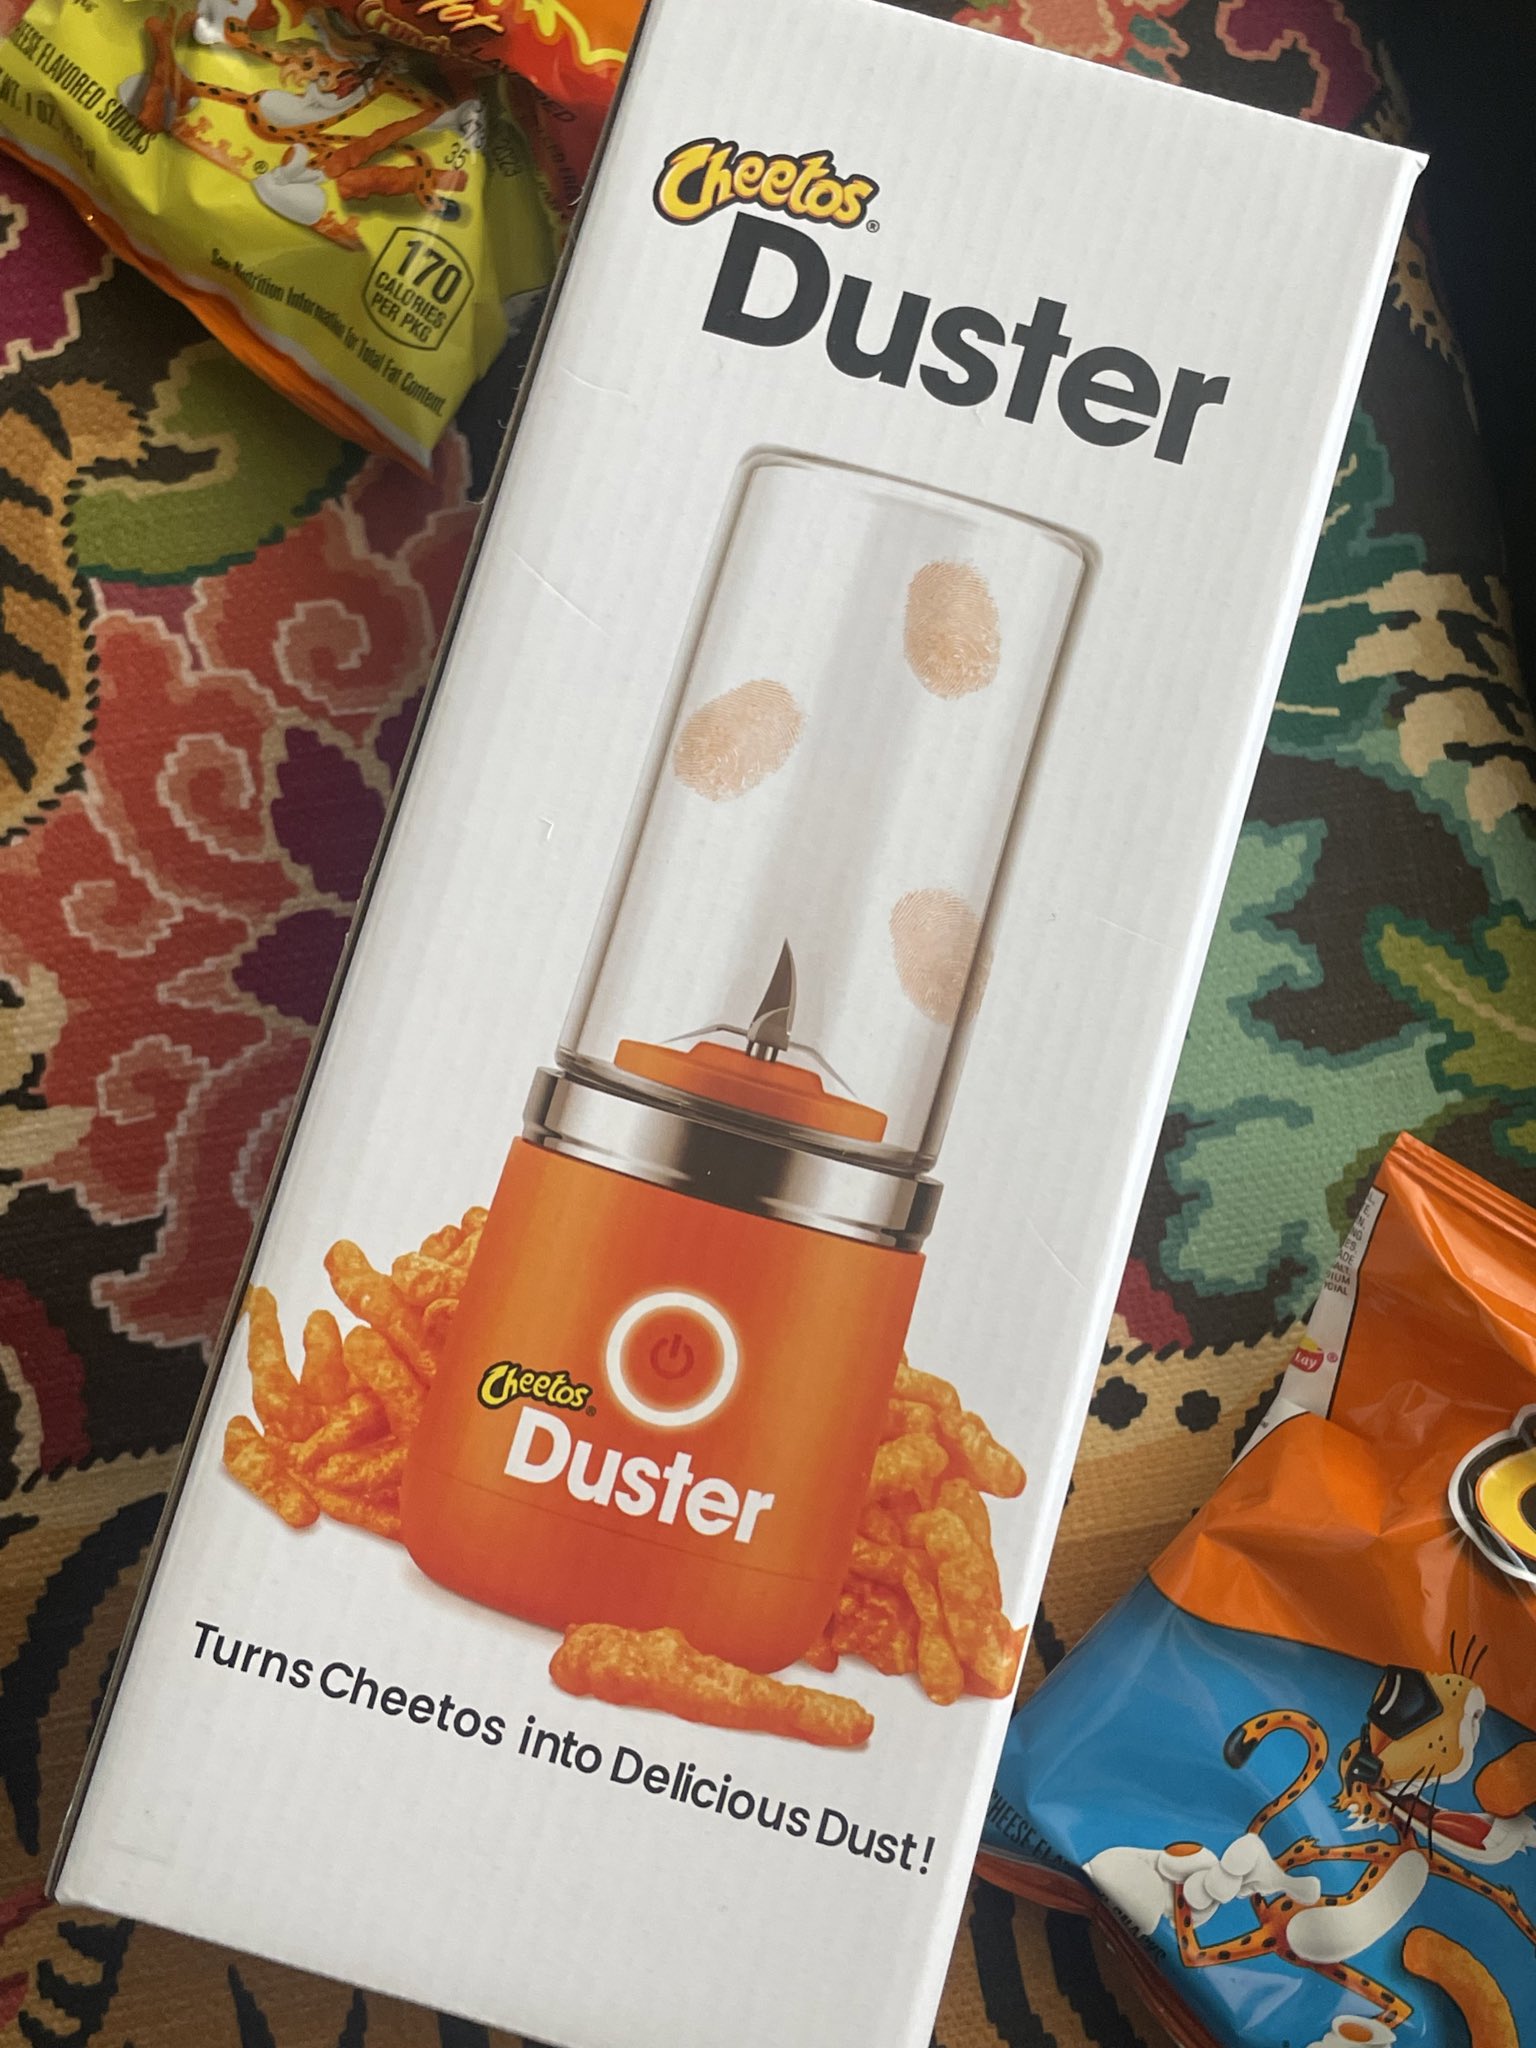  Cheetos Duster - Turn Cheetos into Delicious Cheetos